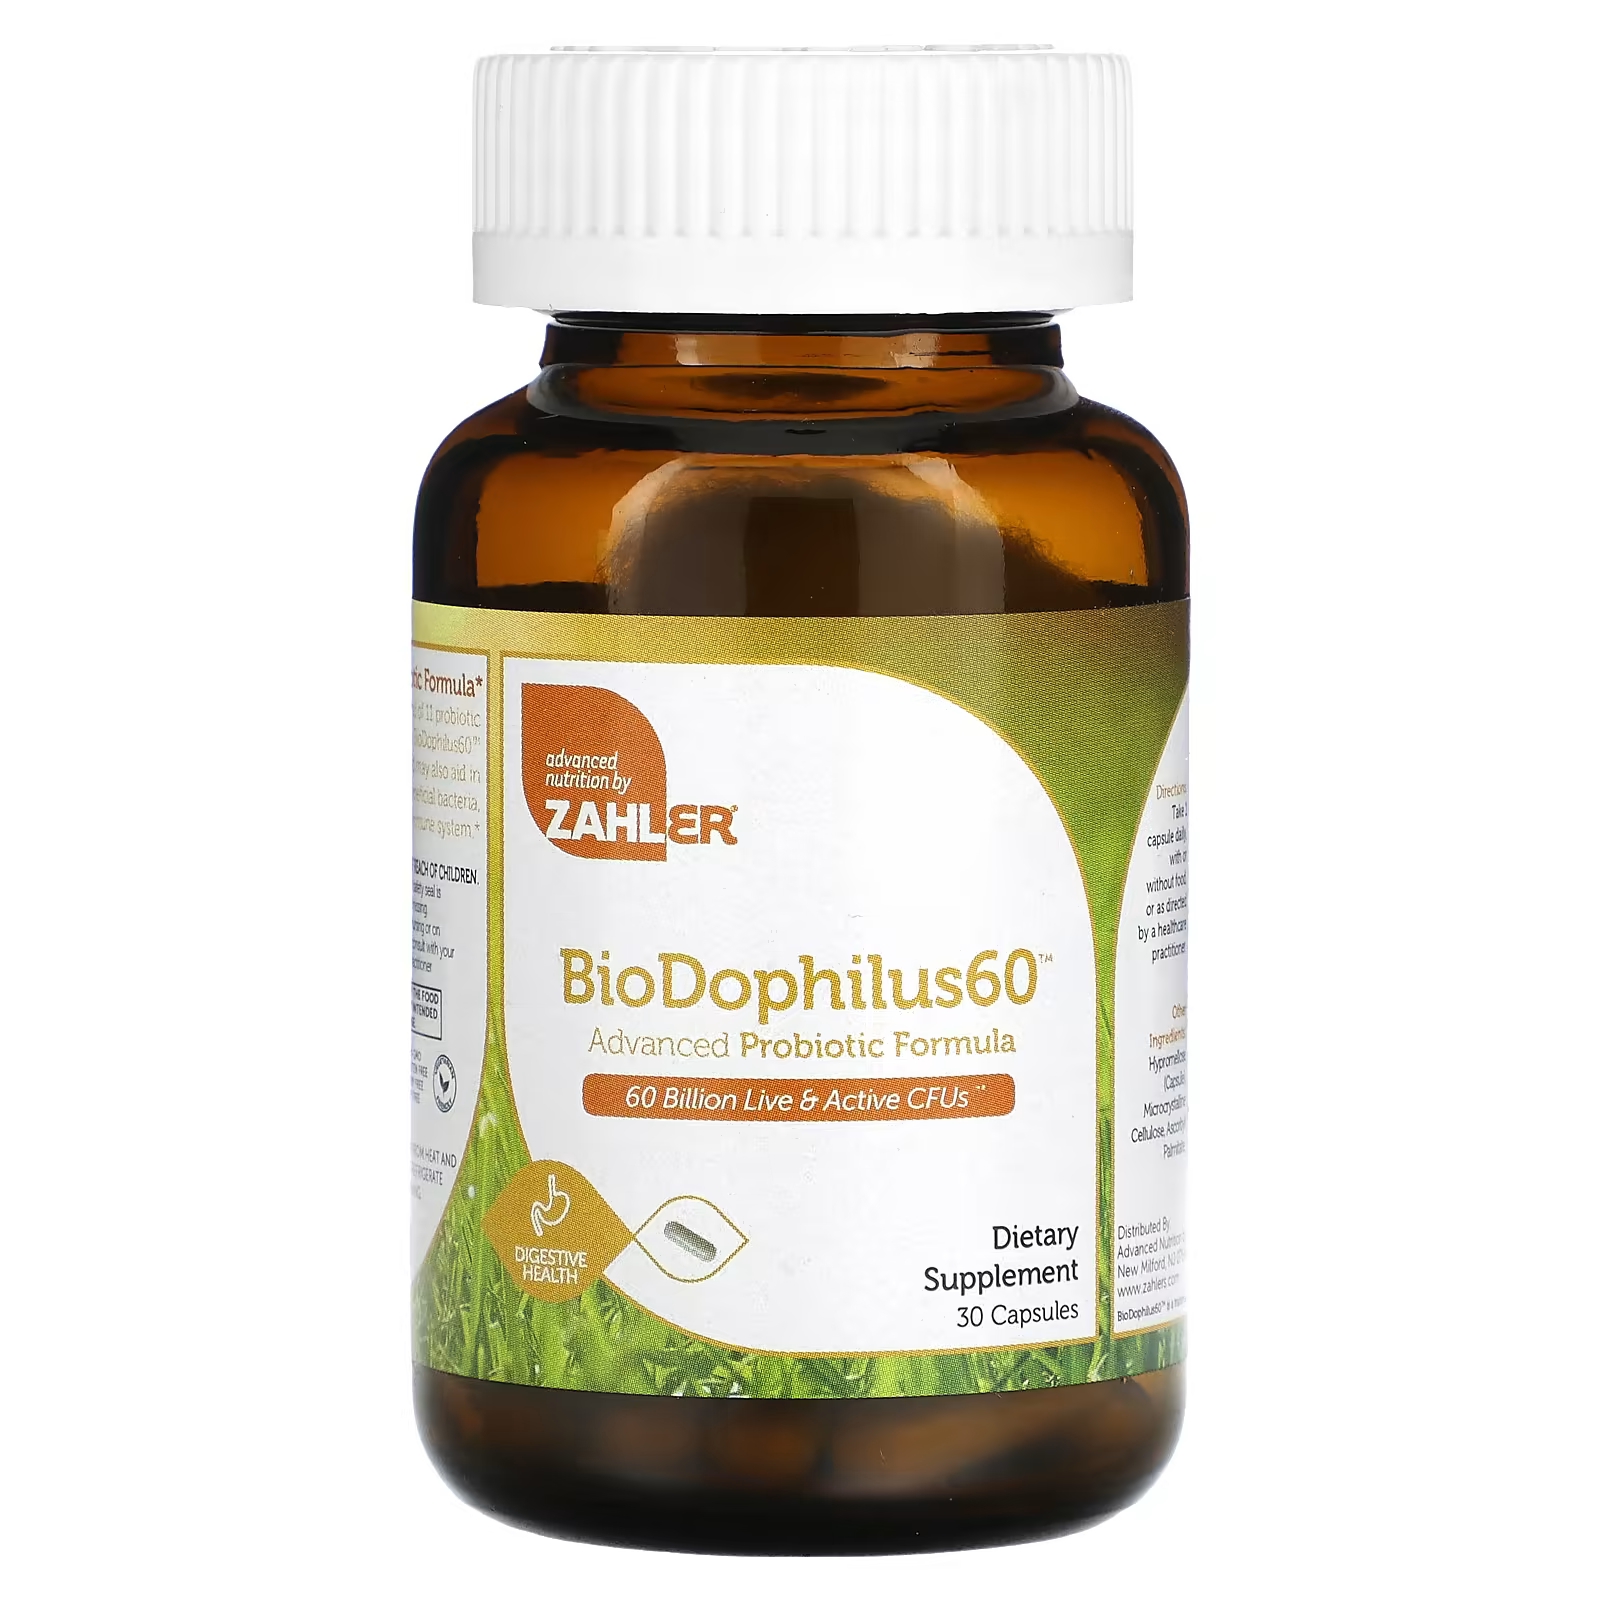 Пищевая добавка Zahler BioDophilus60 улучшенная пробиотическая формула 60 миллиардов КОЕ, 30 капсул zahler biodophilus60 усовершенствованная пробиотическая формула 60 миллиардов кое 60 капсул